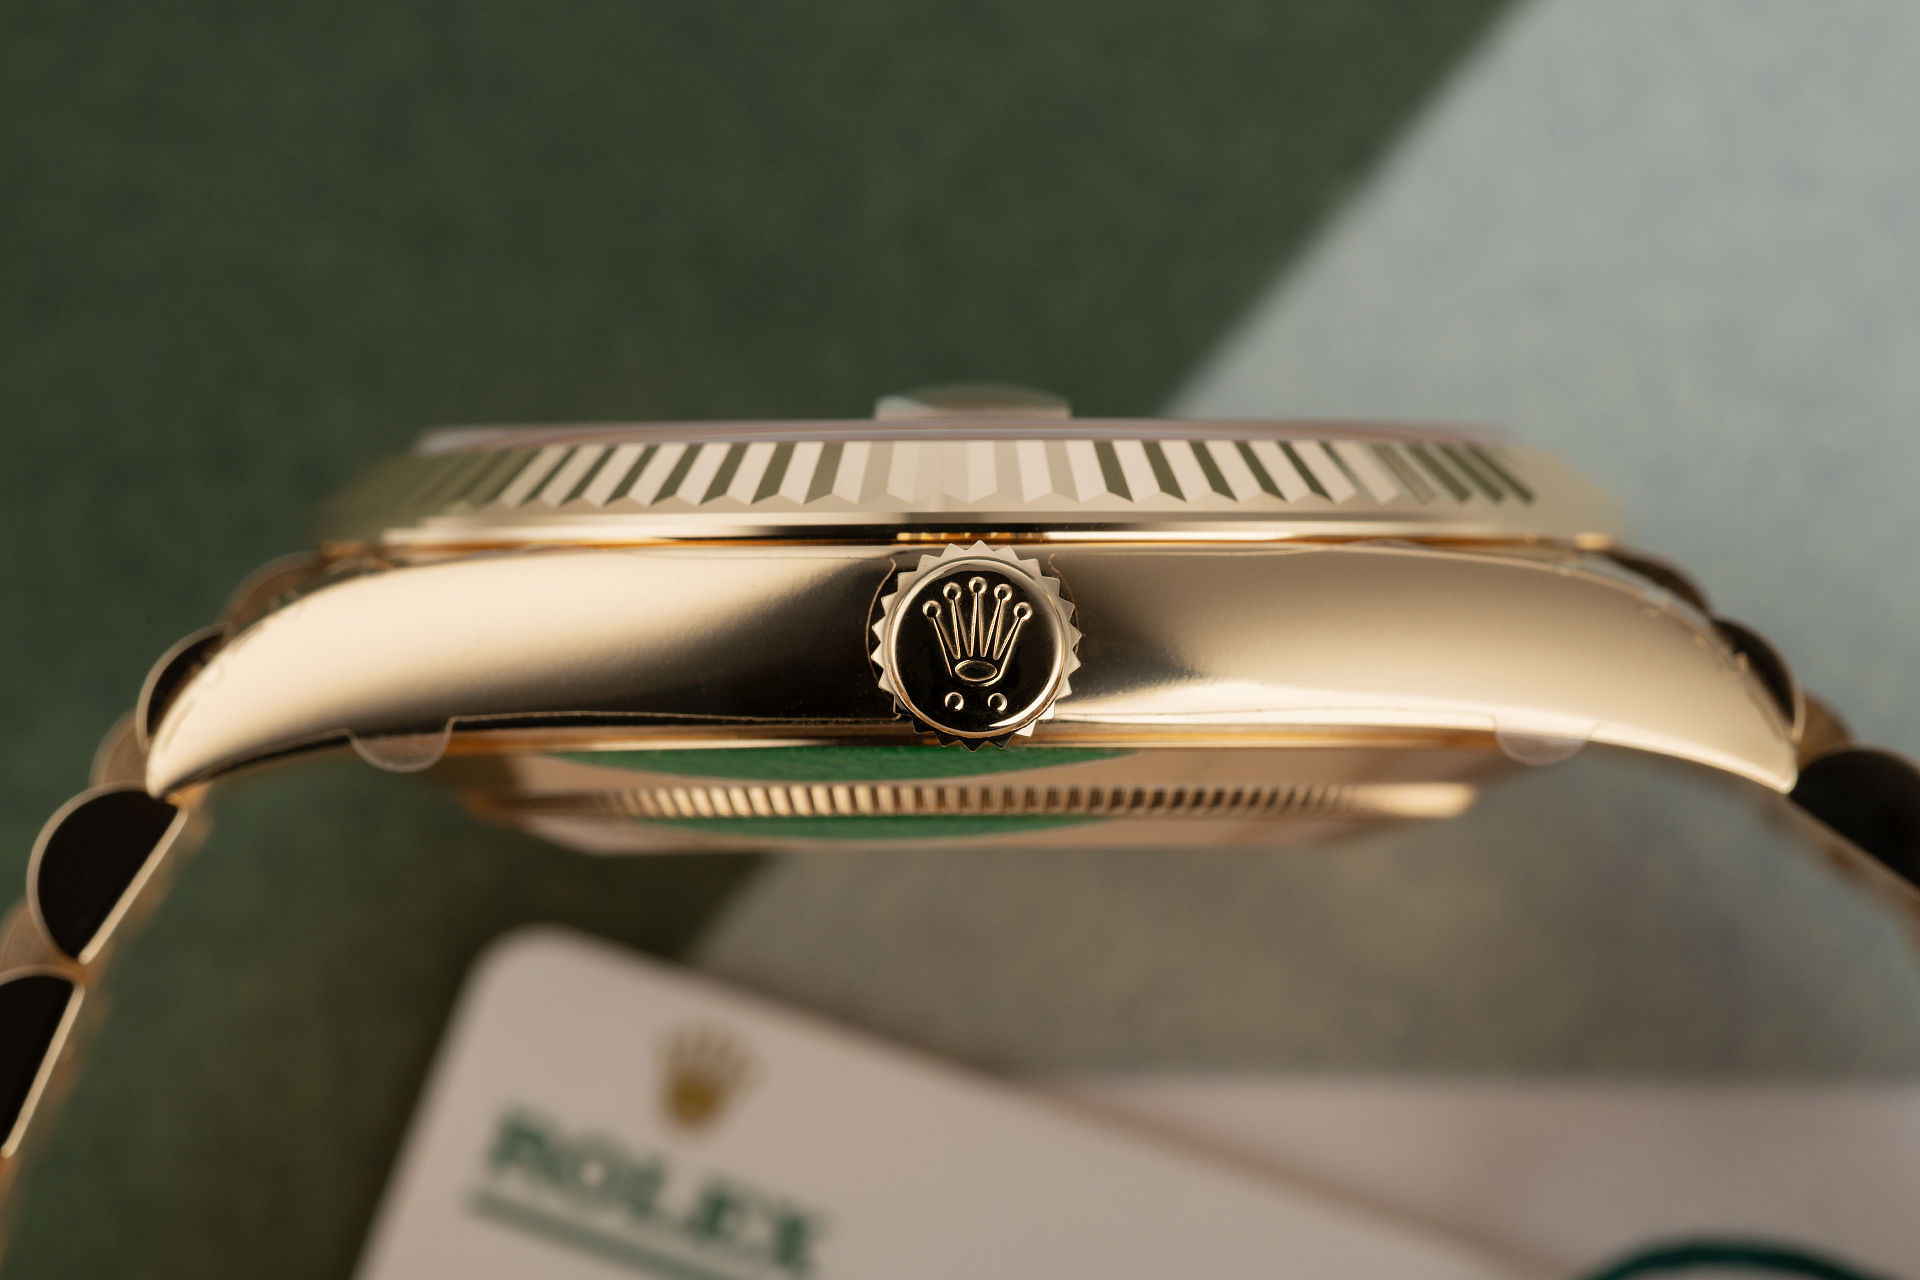 ref 228238 | 'Brand New' - 5 Year Warranty | Rolex Day-Date